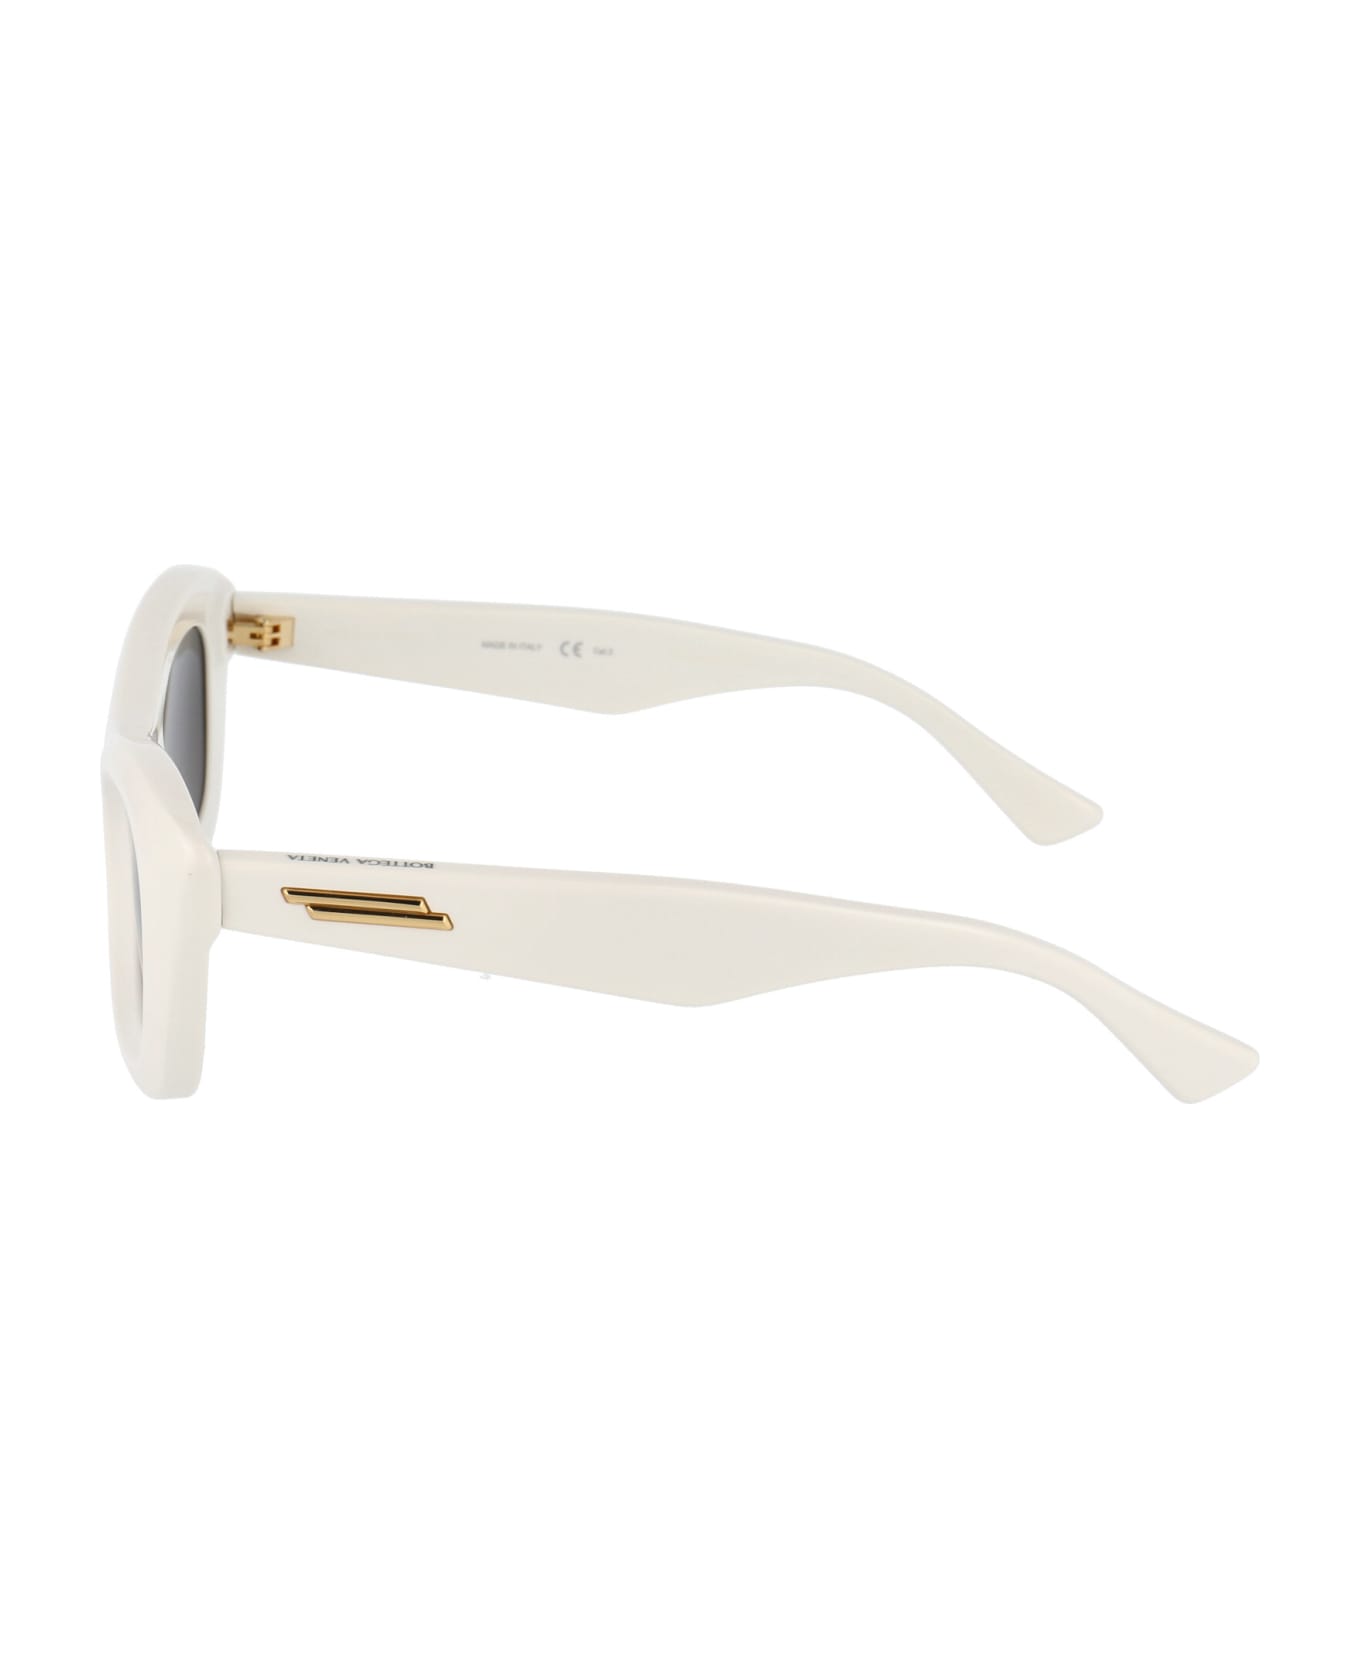 Bottega Veneta Eyewear Bv1088s Sunglasses - 002 IVORY IVORY GREY